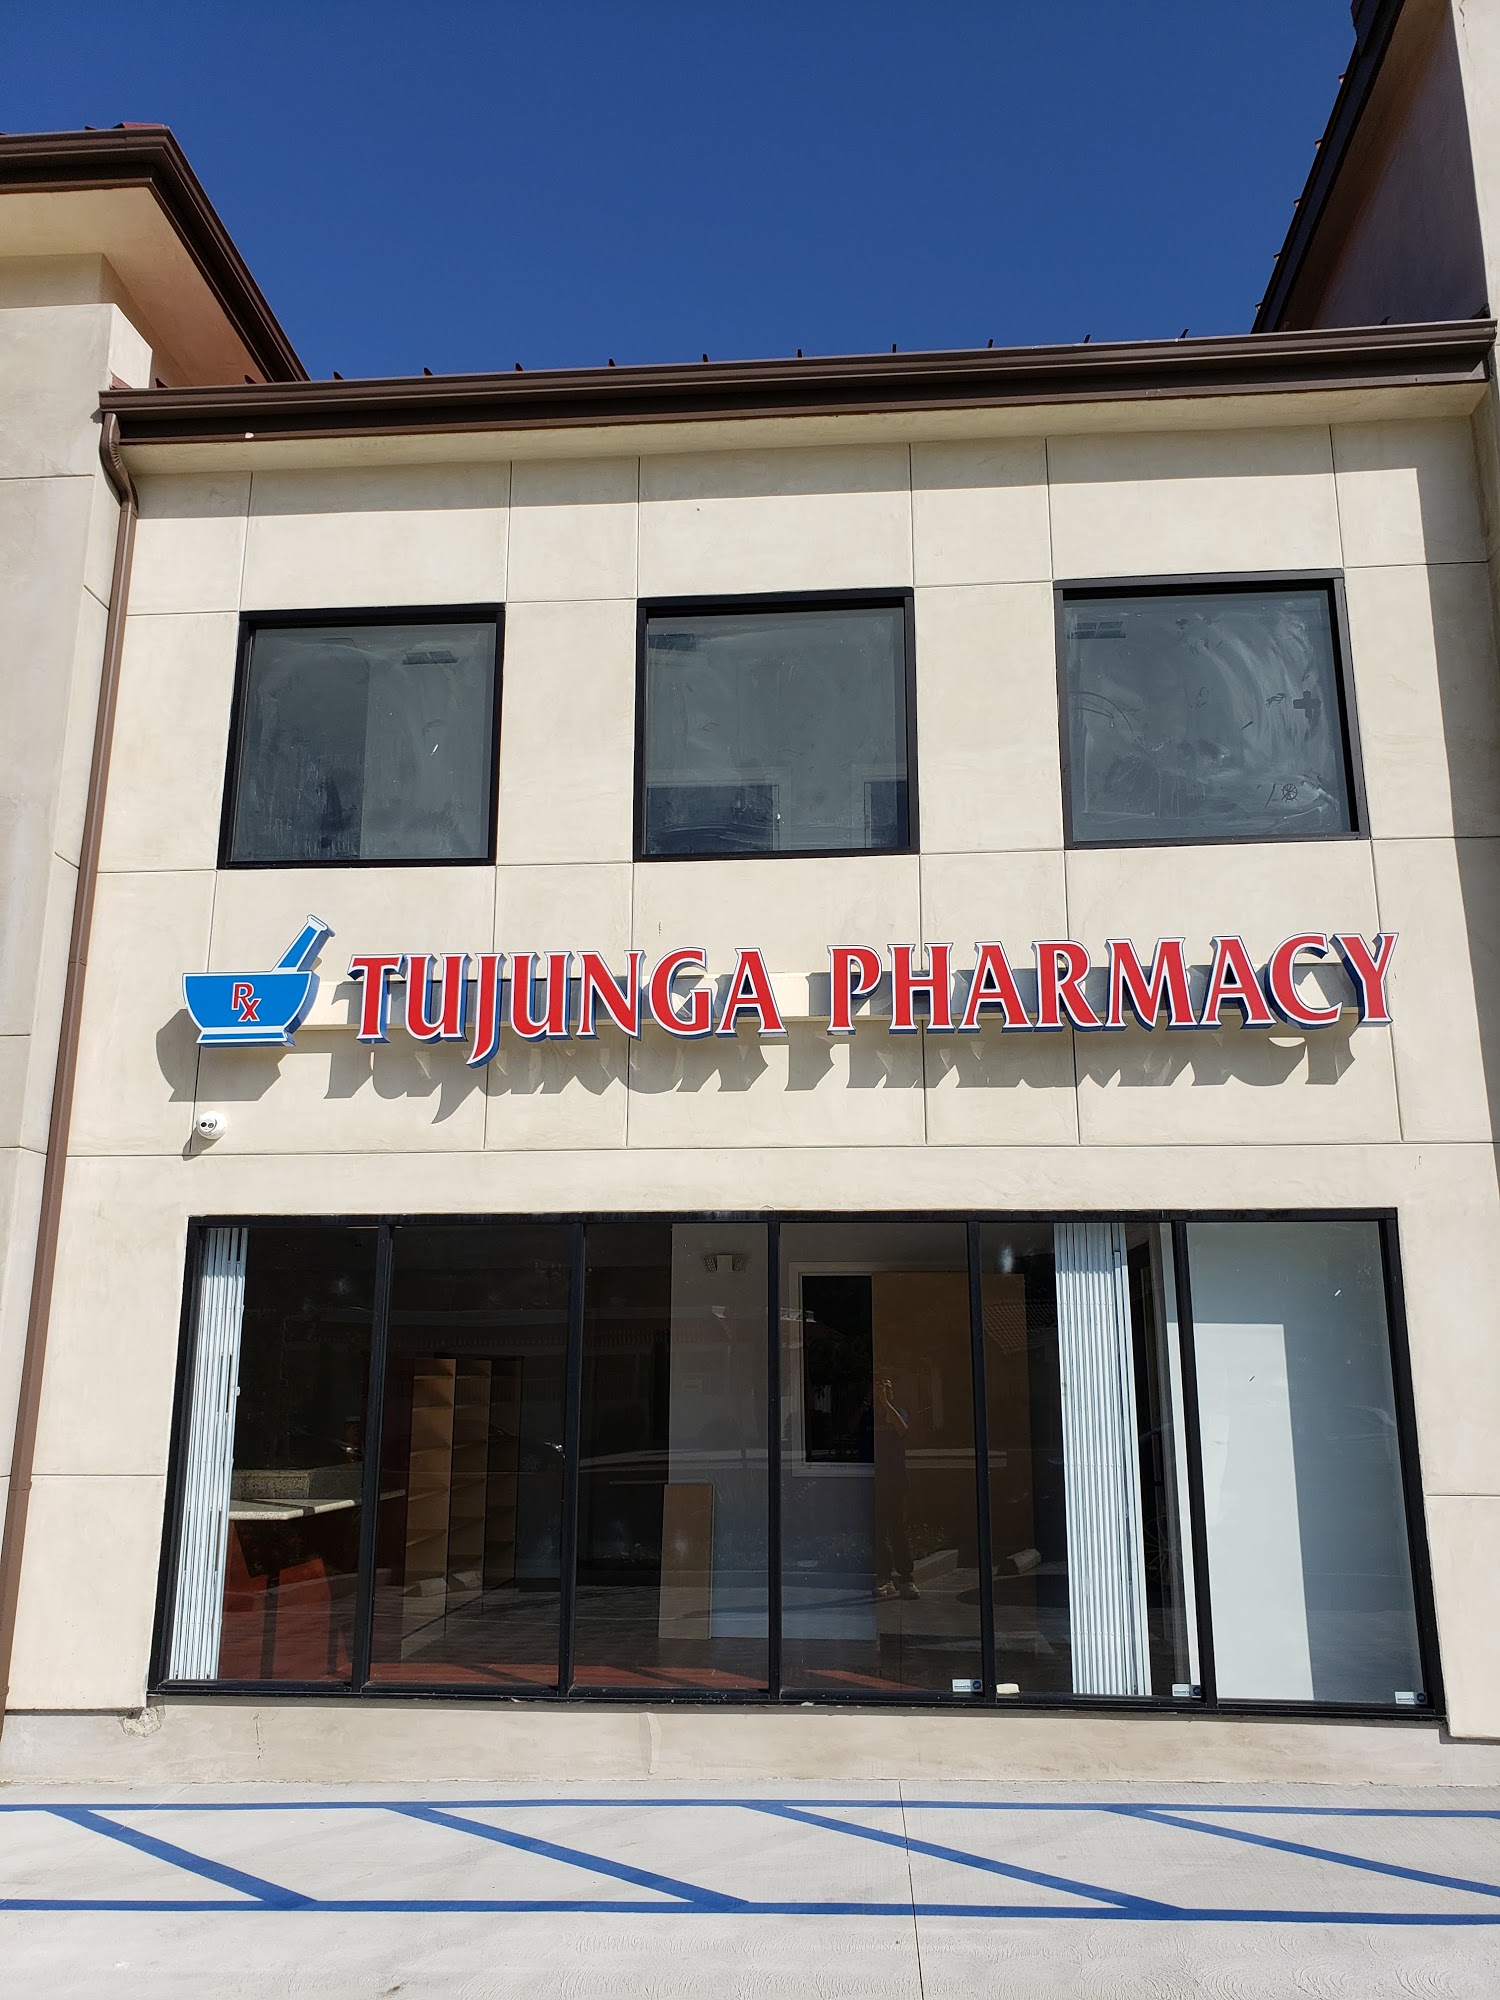 Tujunga Pharmacy